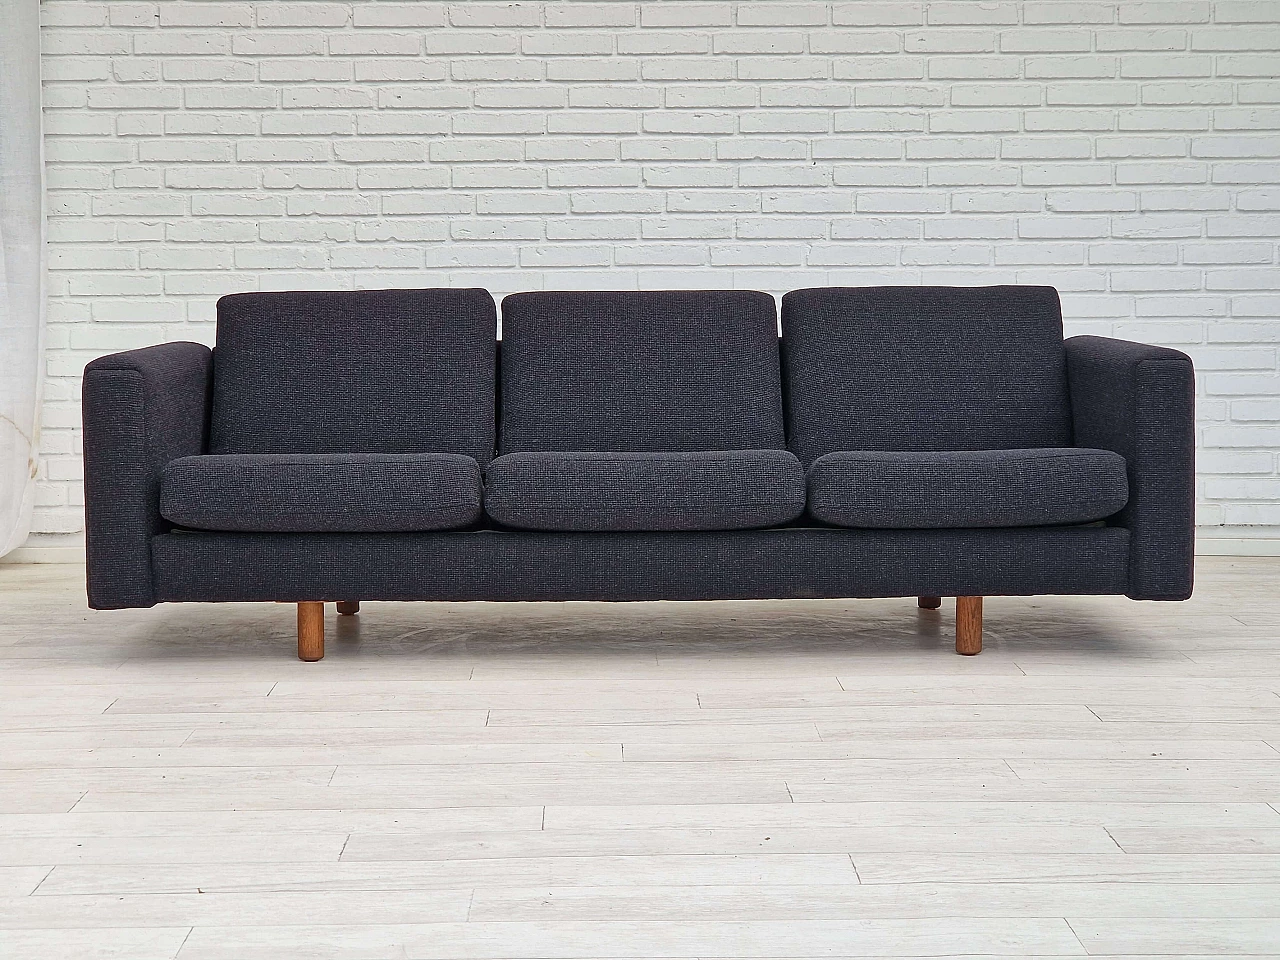 GE300 sofa by Hans J. Wegner for Getama, 1960s 2